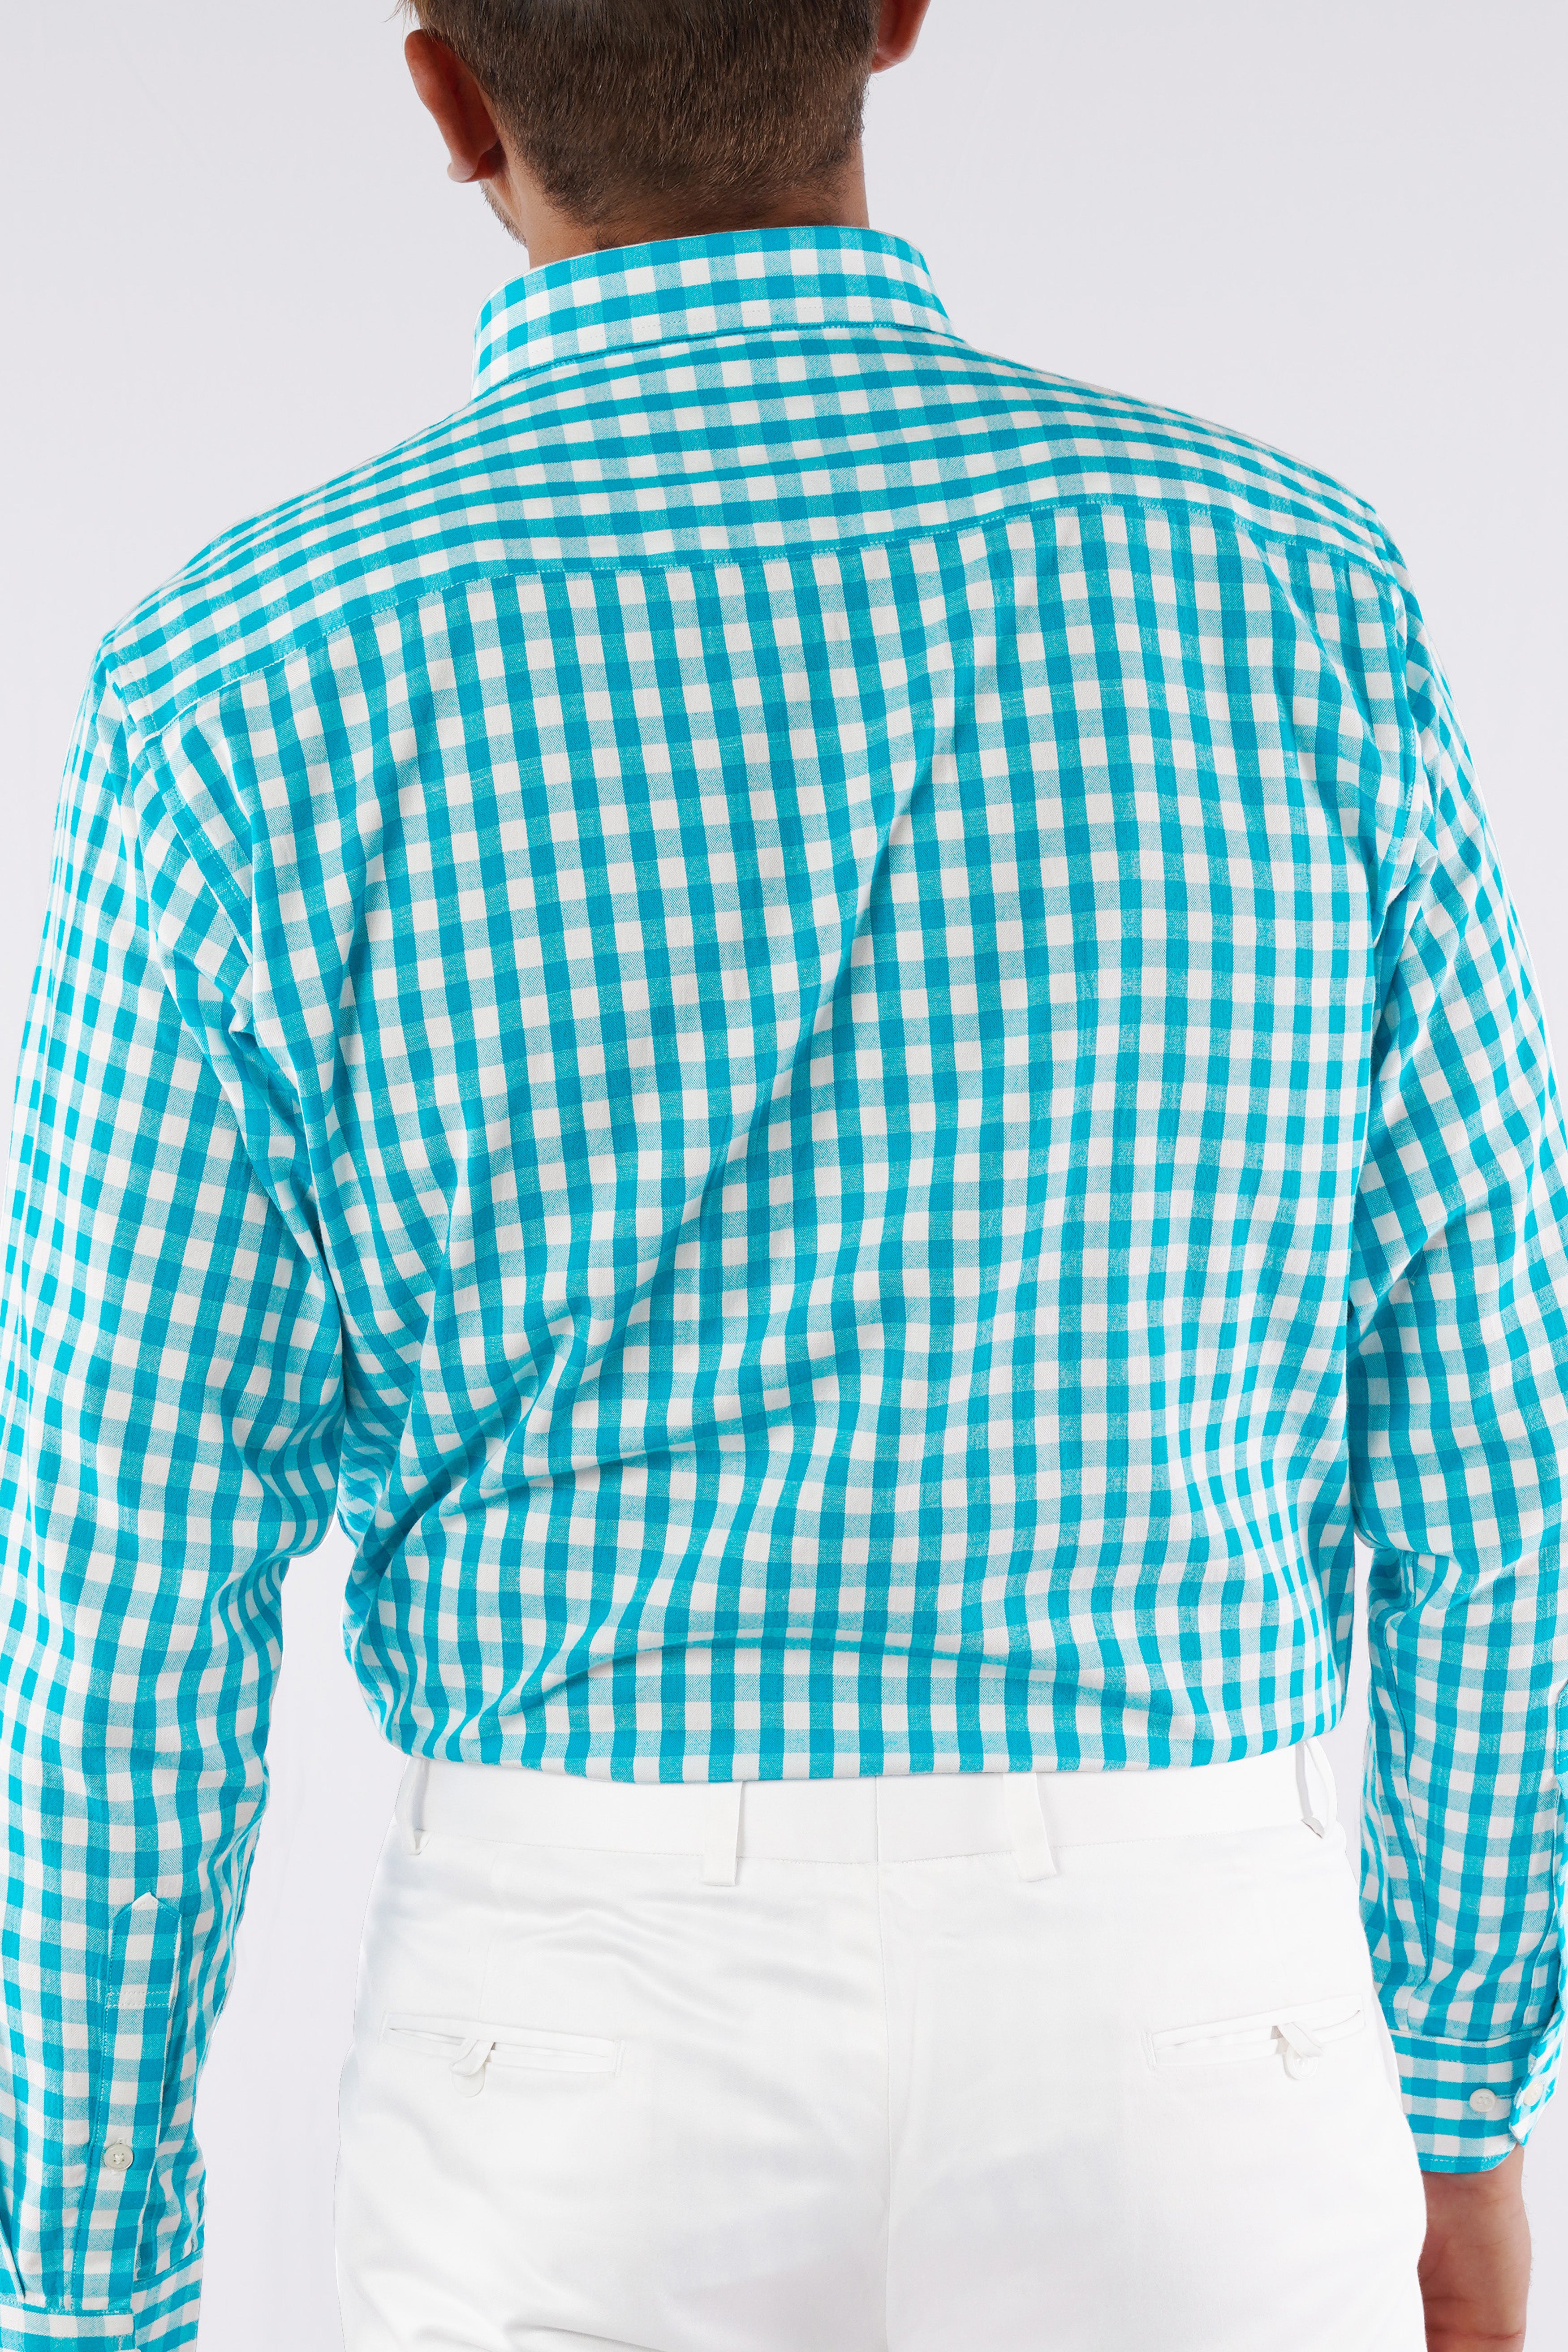 Cerulean Aqua Blue and White Checkered Royal Oxford Shirt